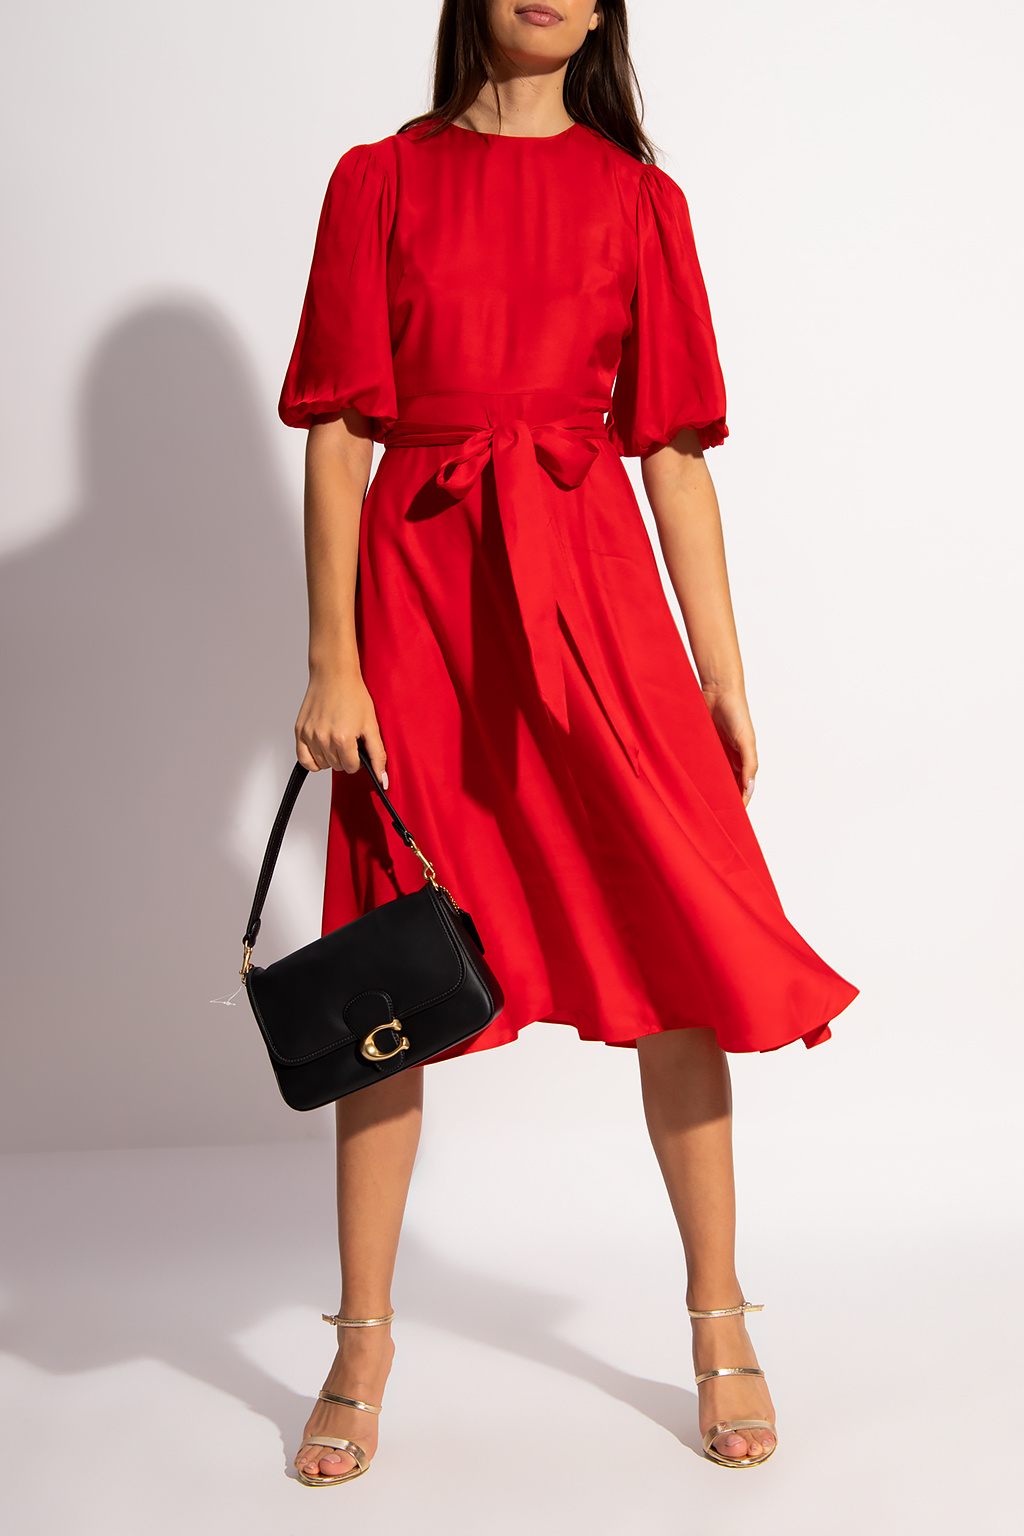 Buy Adidas women teachfit marimekko full length leggings red